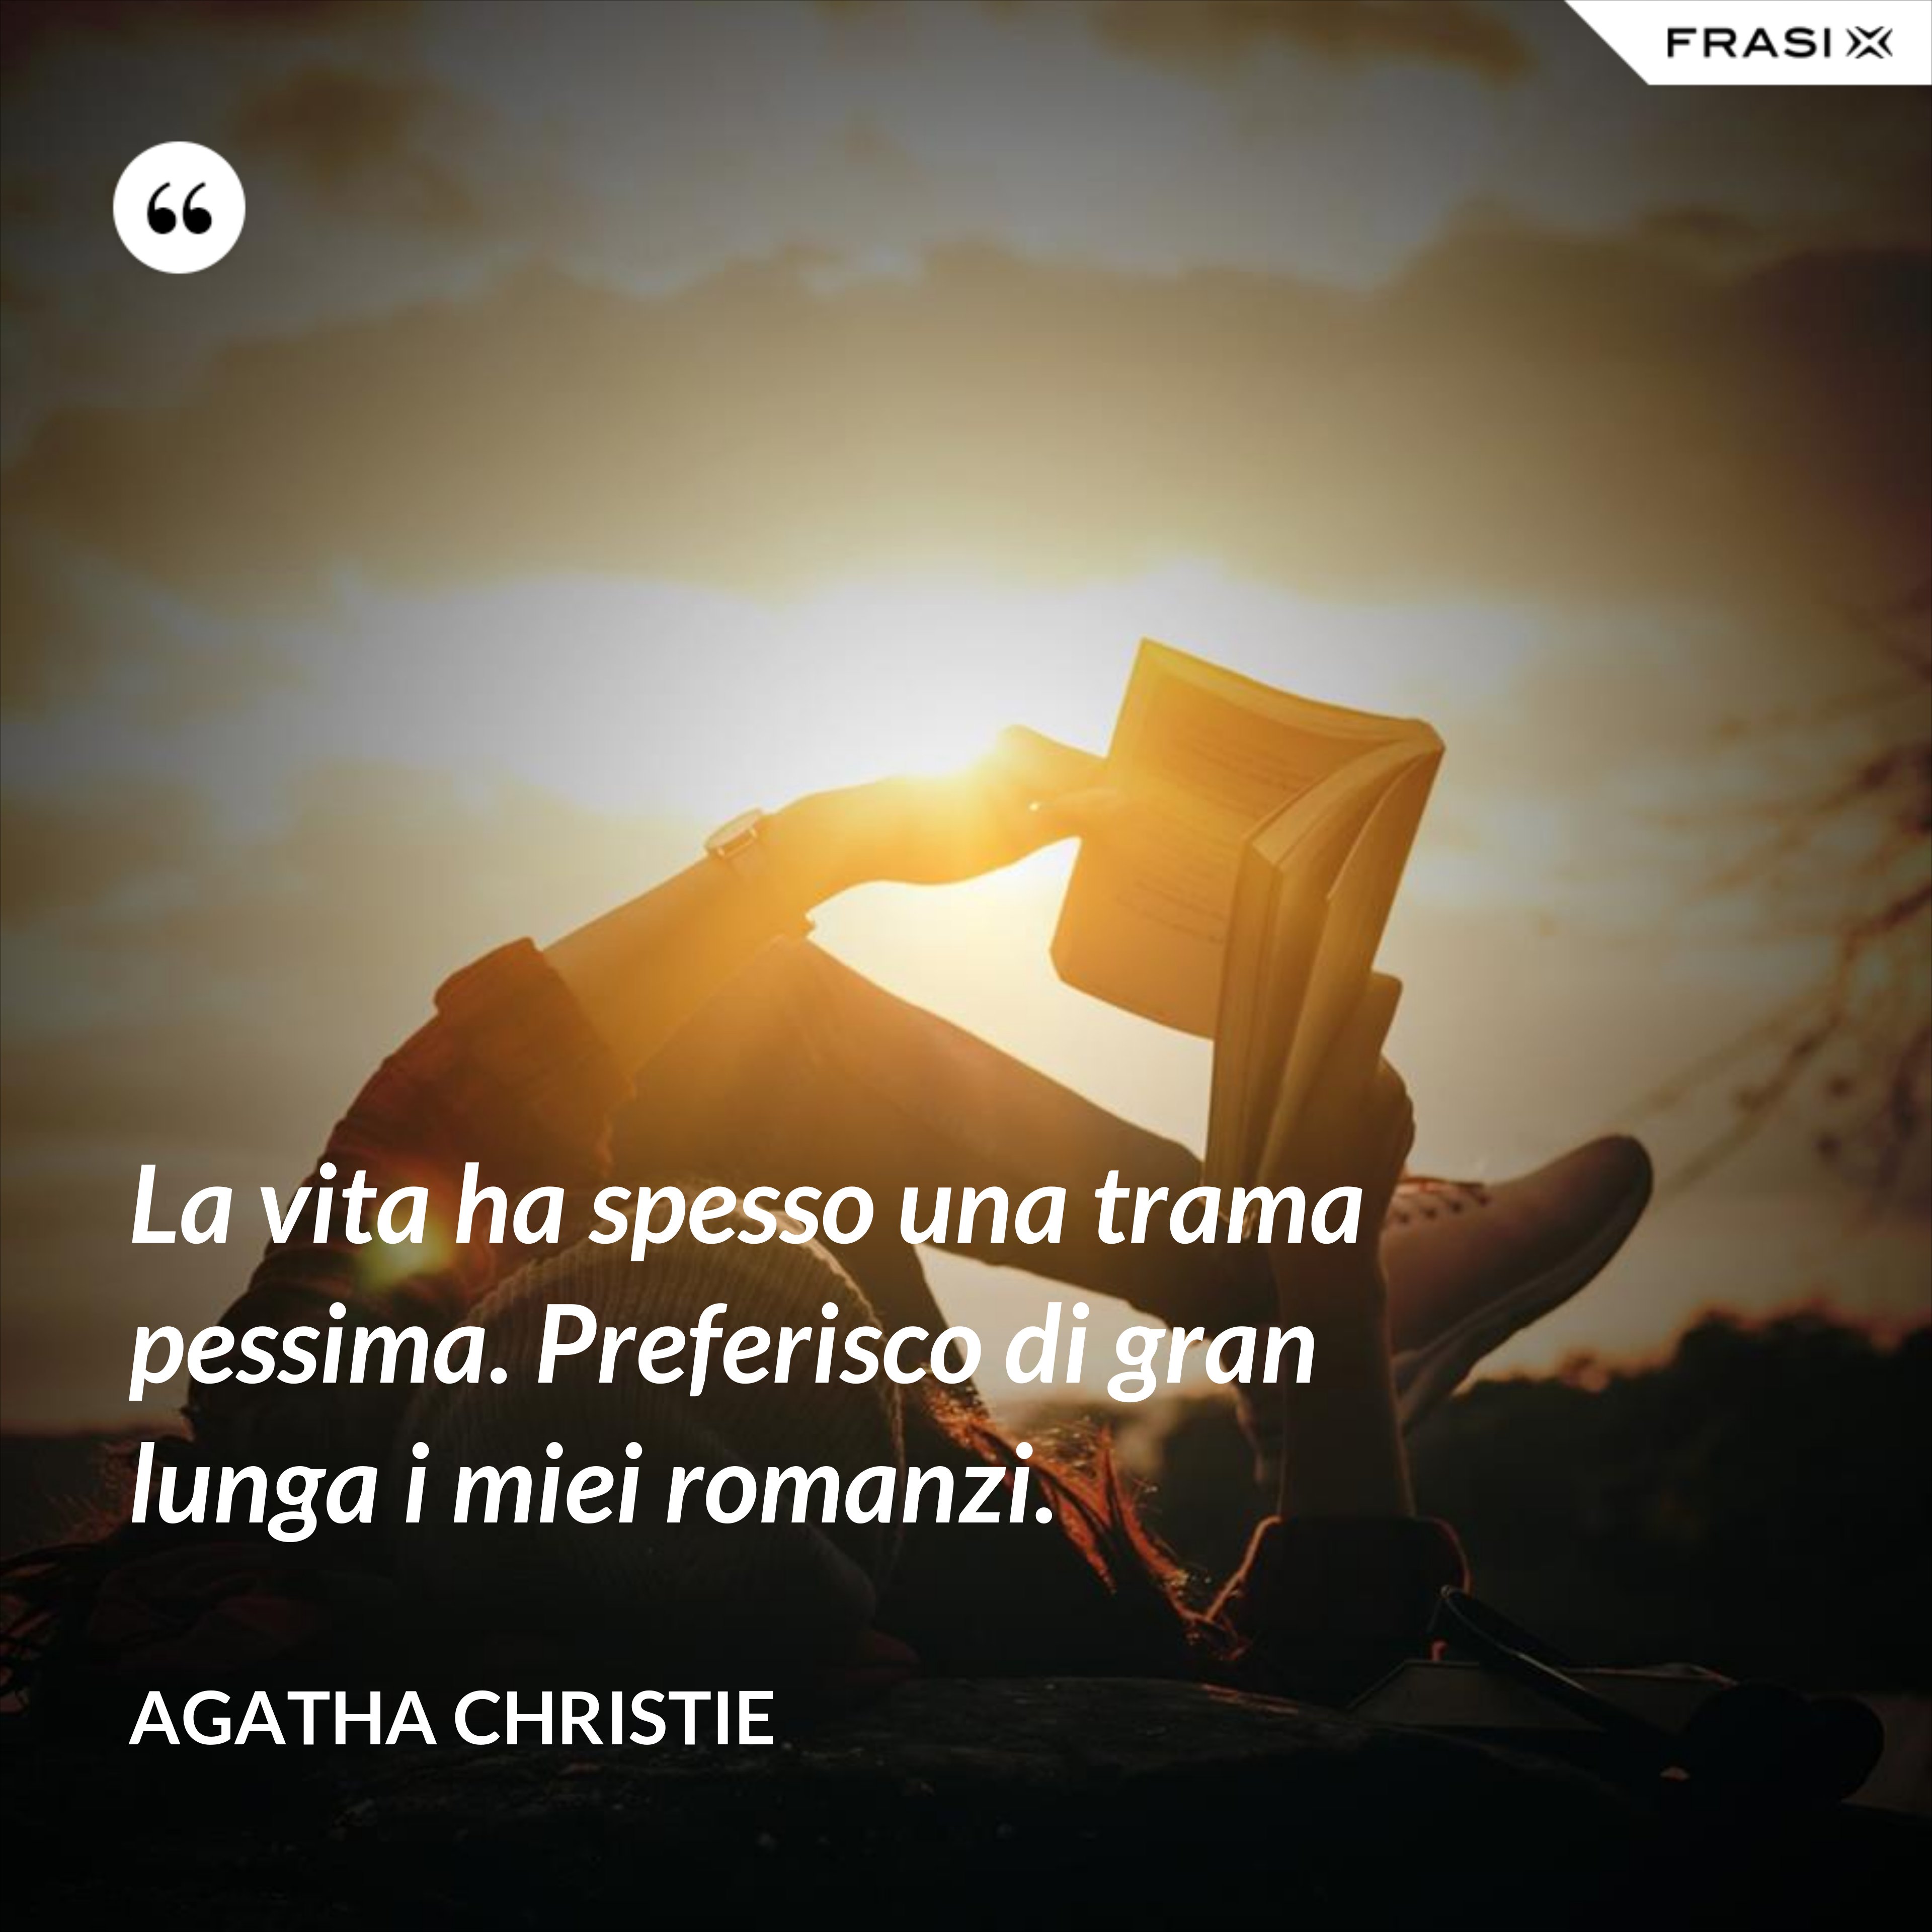 La vita ha spesso una trama pessima. Preferisco di gran lunga i miei romanzi. - Agatha Christie